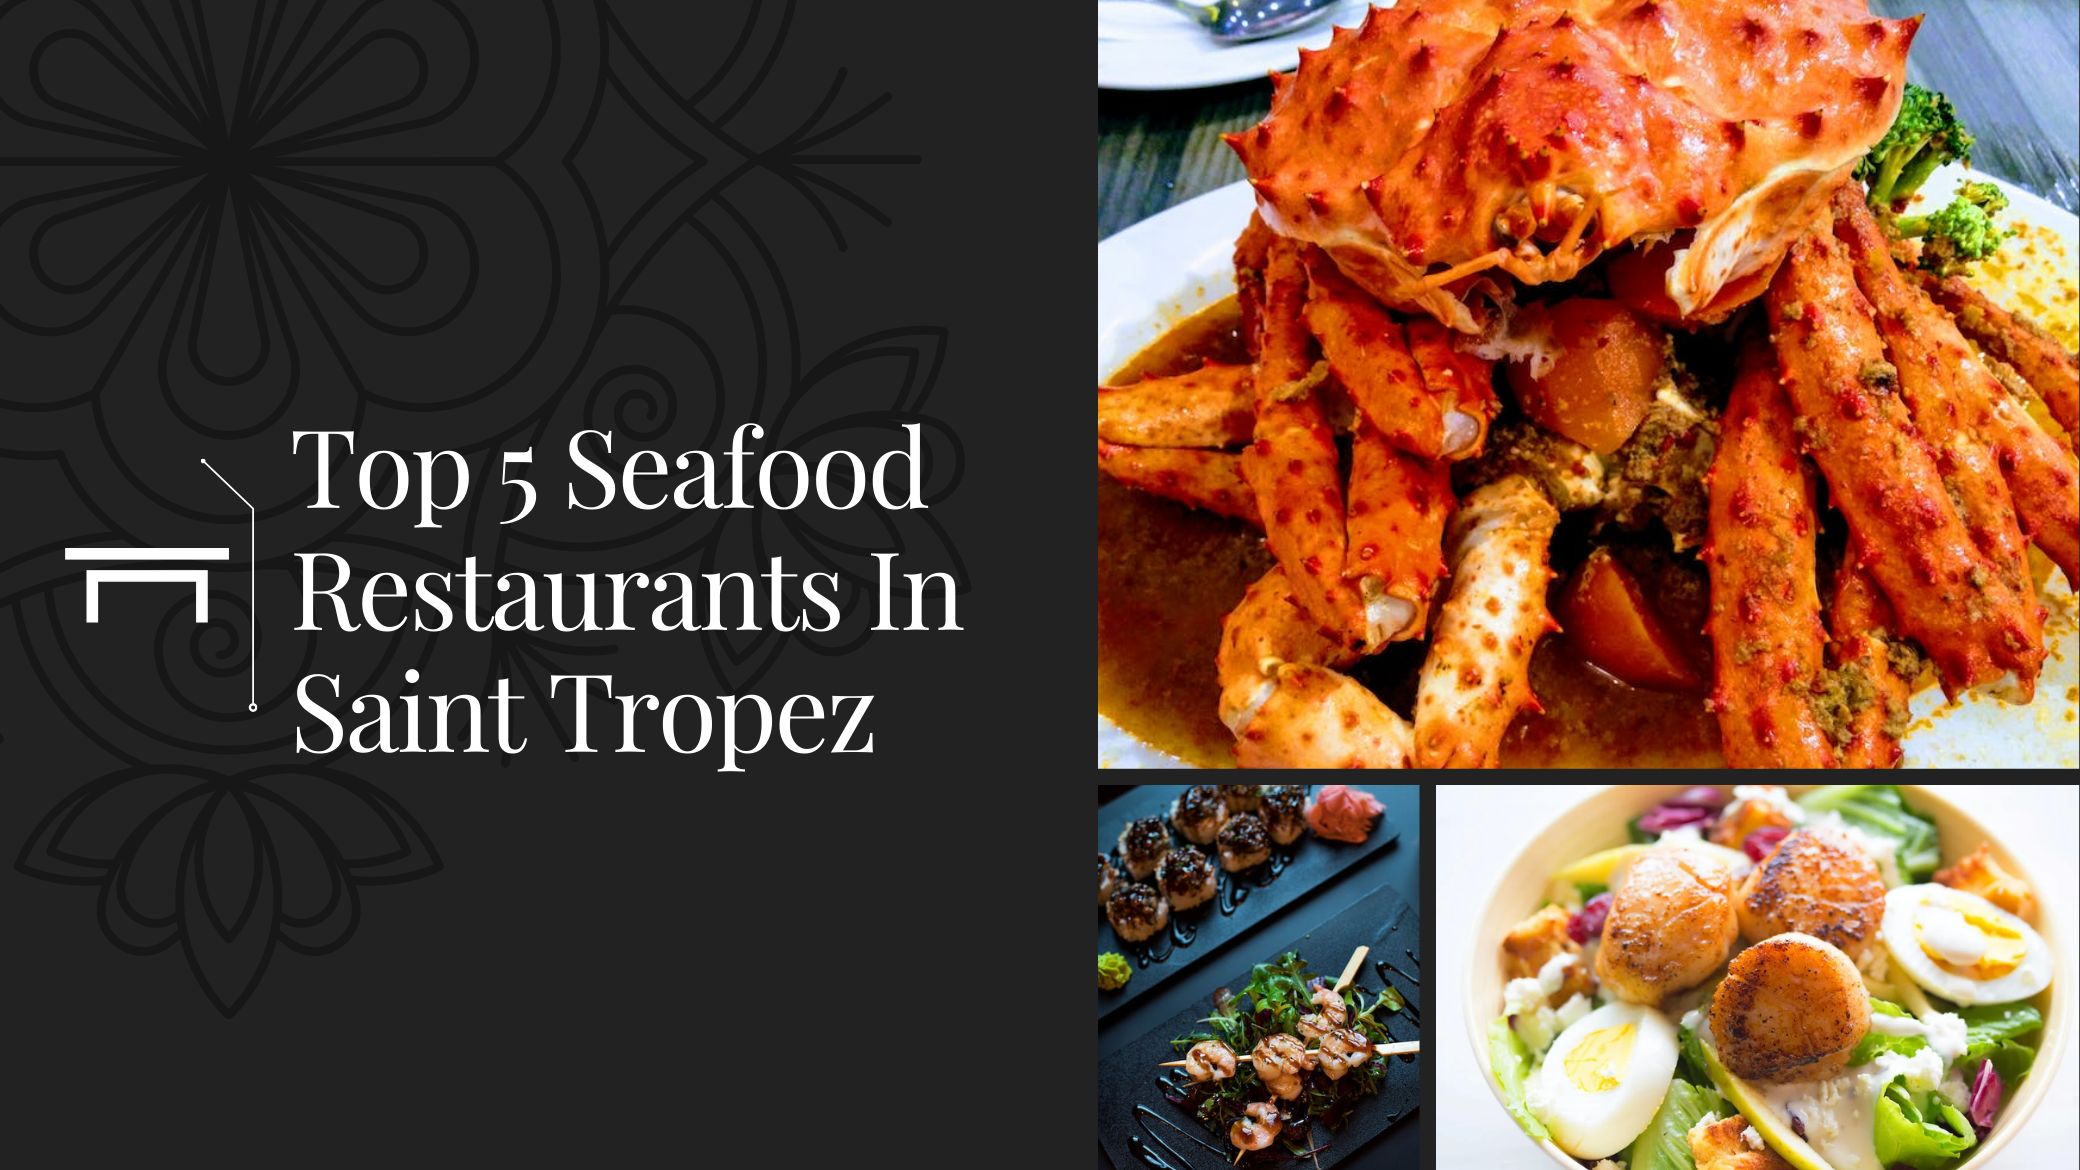 Top 5 Seafood Restaurants in St. Tropez